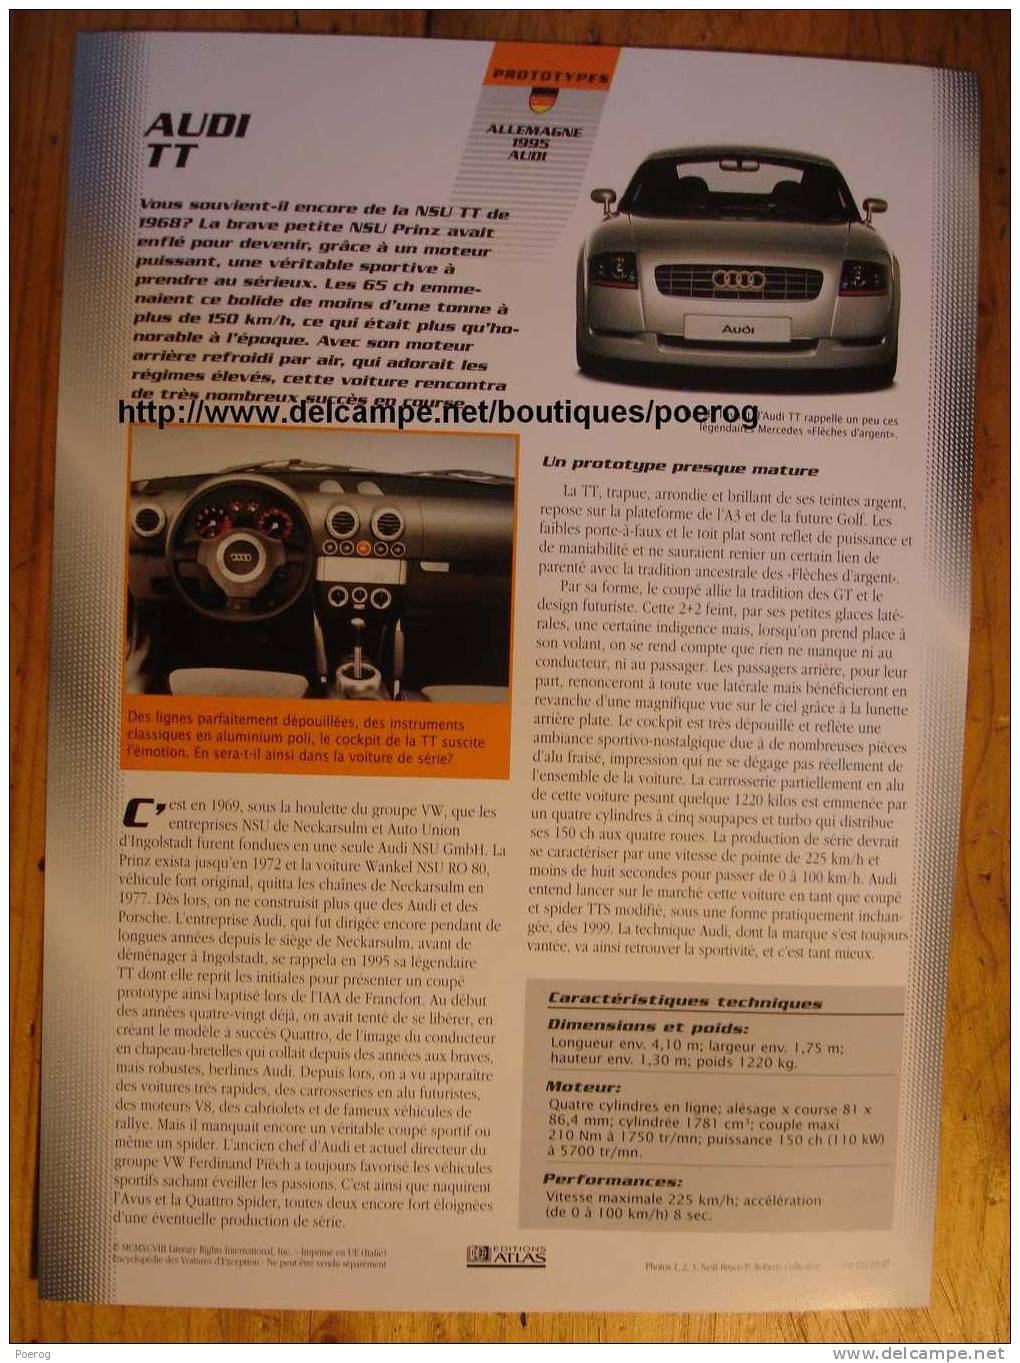 AUDI TT - FICHE VOITURE GRAND FORMAT (A4) - 1998 - Auto Automobile Automobiles Voitures Car Cars - Voitures